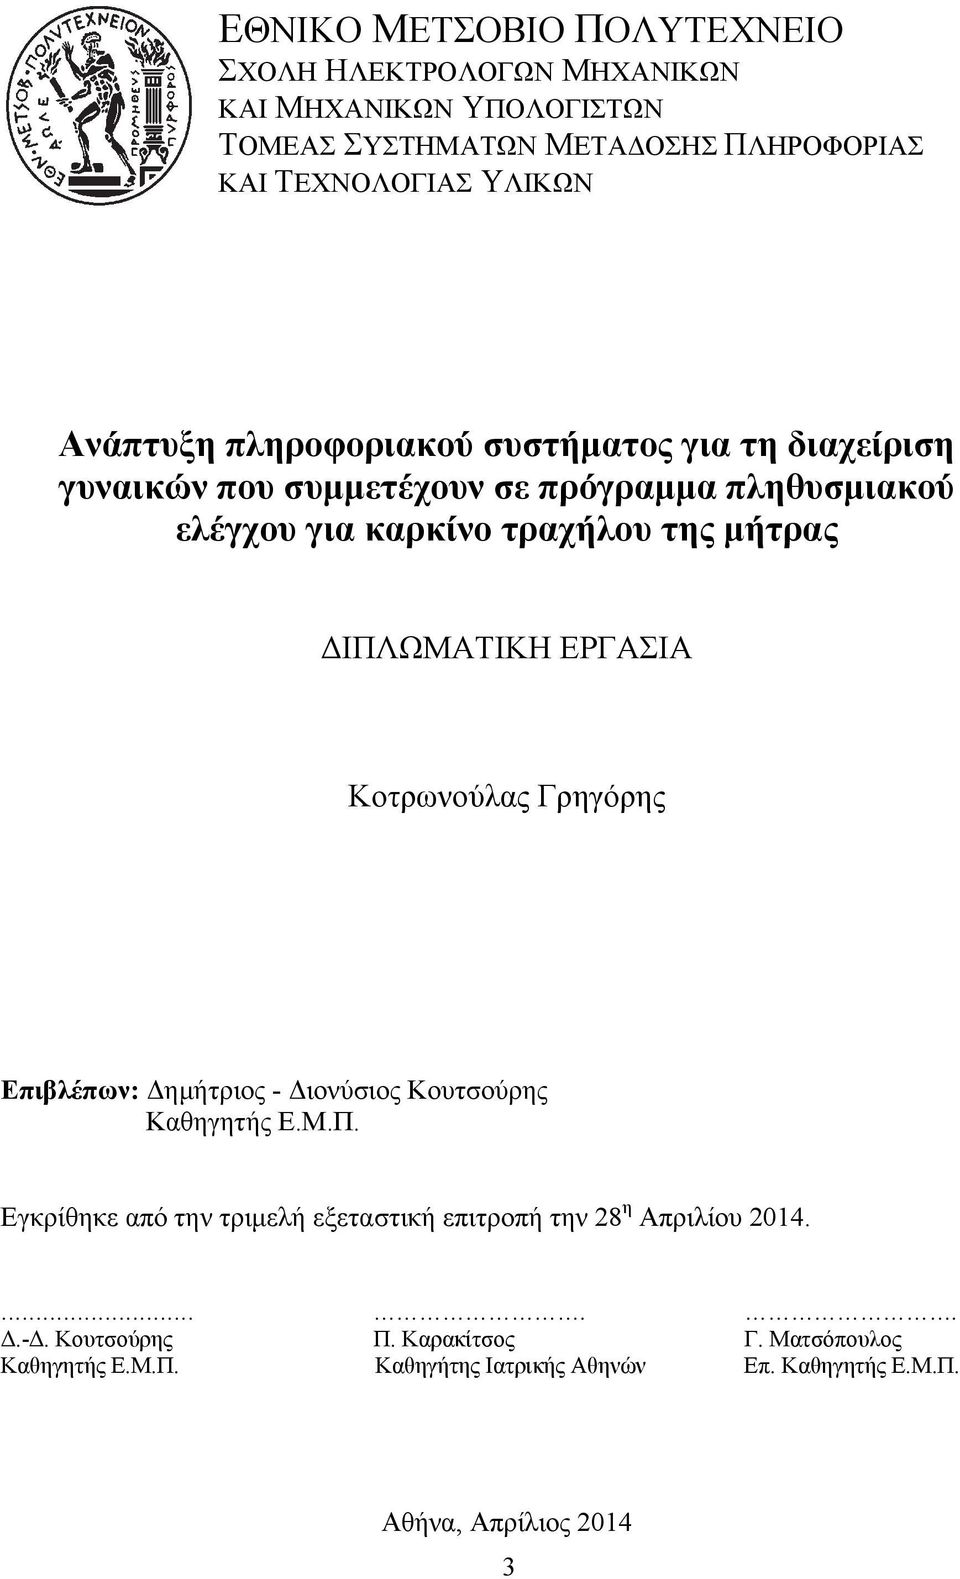 ΔΙΠΛΩΜΑΤΙΚΗ ΕΡΓΑΣΙΑ Κοτρωνούλας Γρηγόρης Επιβλέπων: Δημήτριος - Διονύσιος Κουτσούρης Καθηγητής Ε.Μ.Π. Εγκρίθηκε από την τριμελή εξεταστική επιτροπή την 28 η Απριλίου 2014.